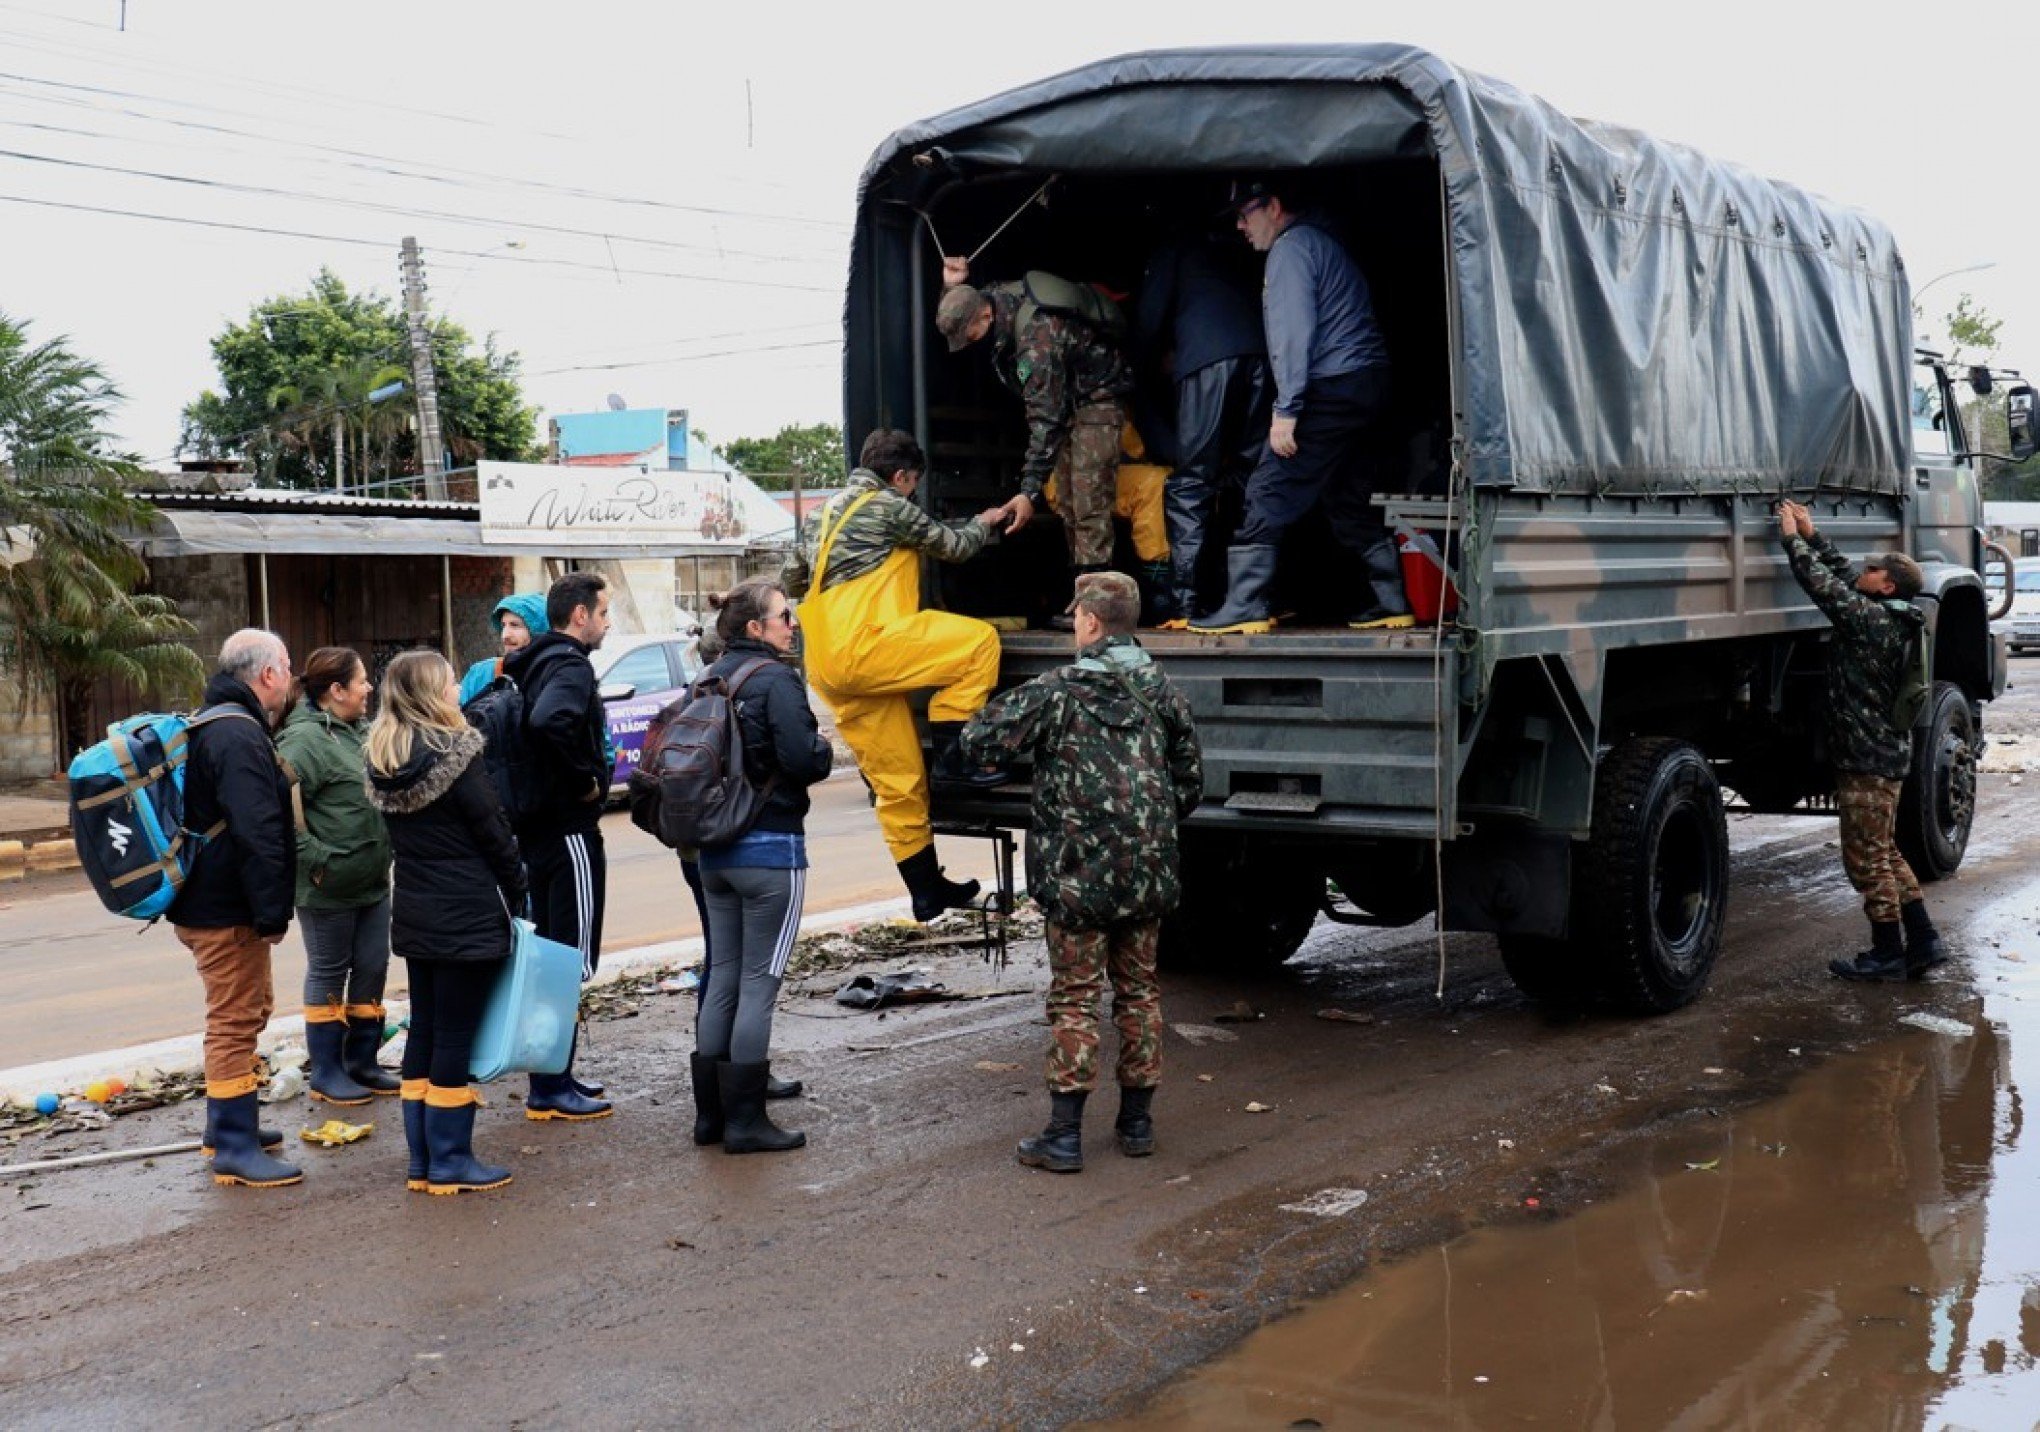 "Cansei de caminhar com água na cintura", diz moradora ao usar caminhão das Forças Armadas